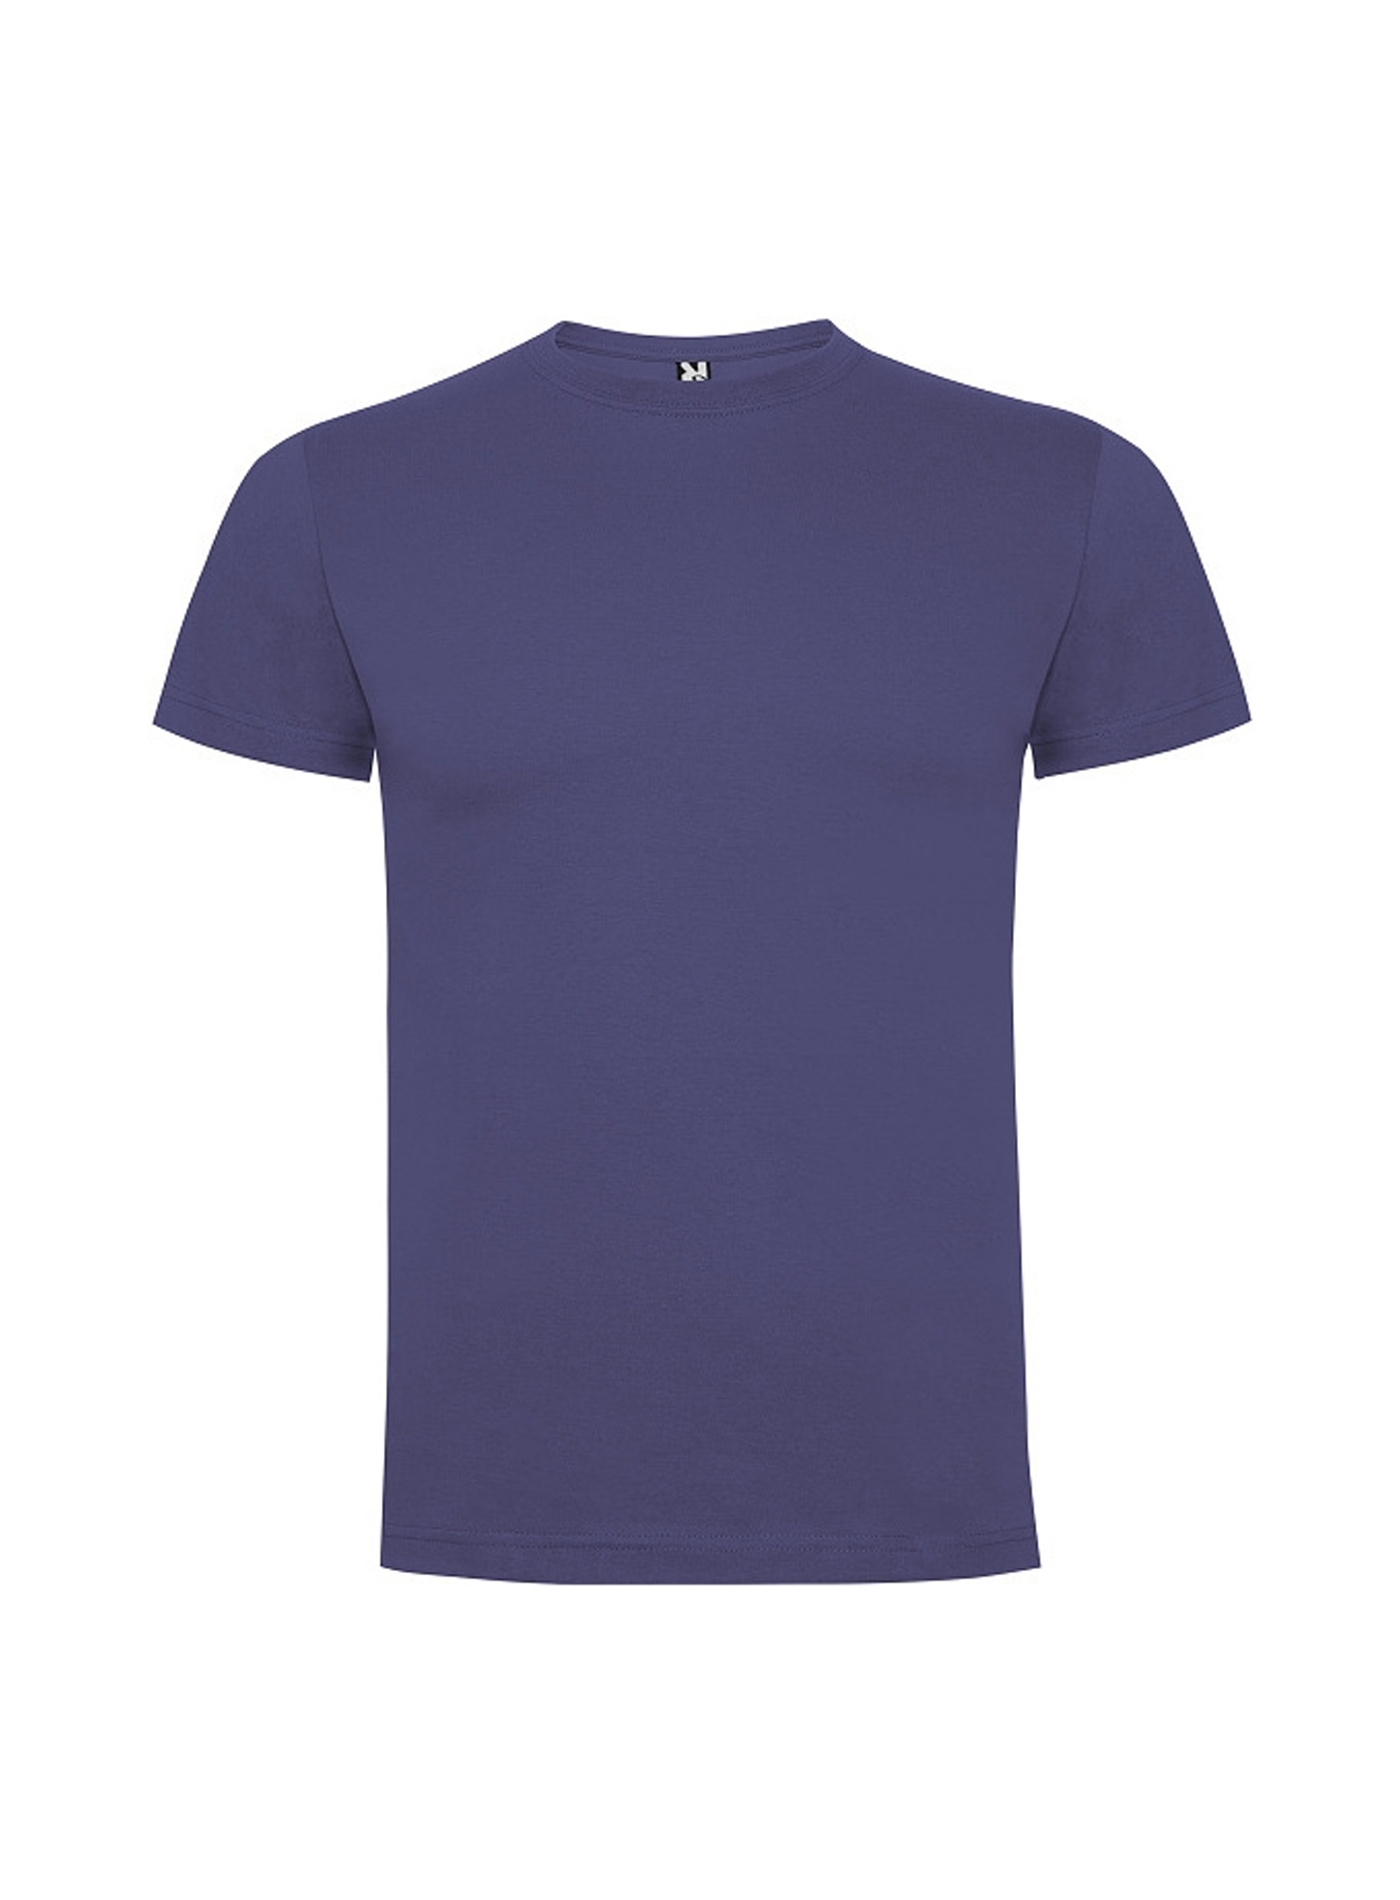 Dětské tričko Roly Dogo premium - Modrofialová 5-6